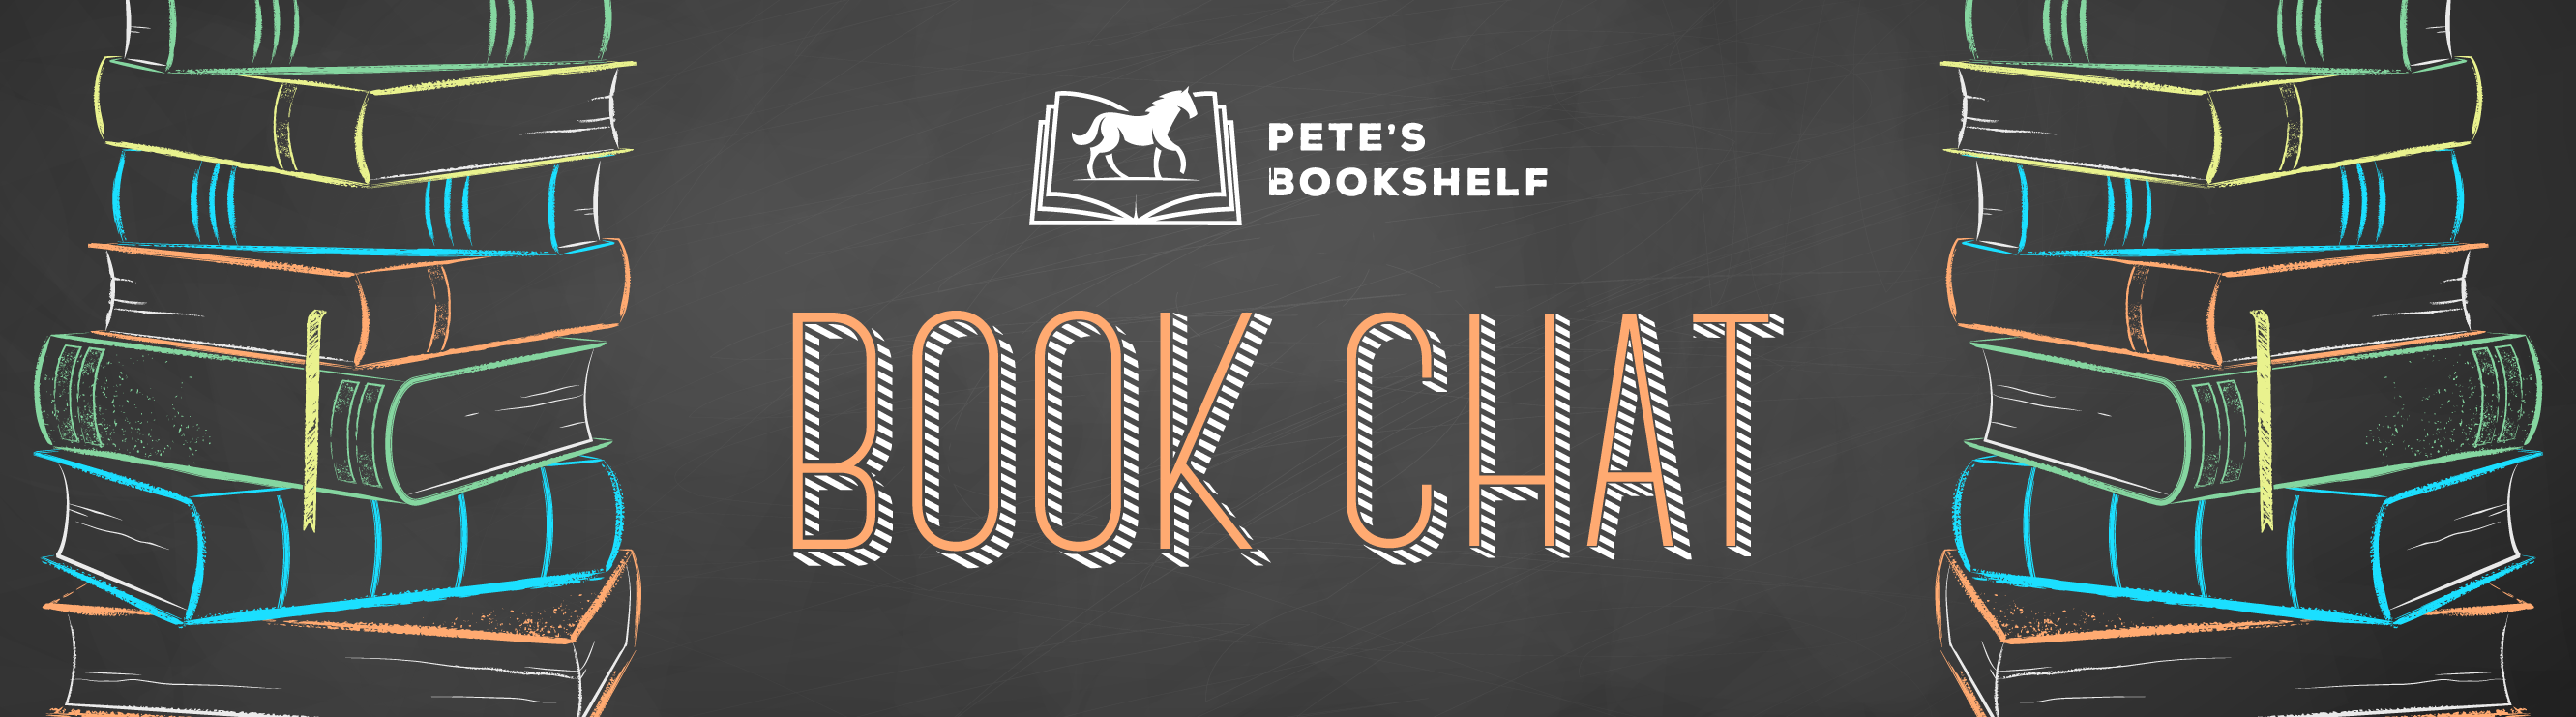 #PetesBookshelf Book Chat web banner